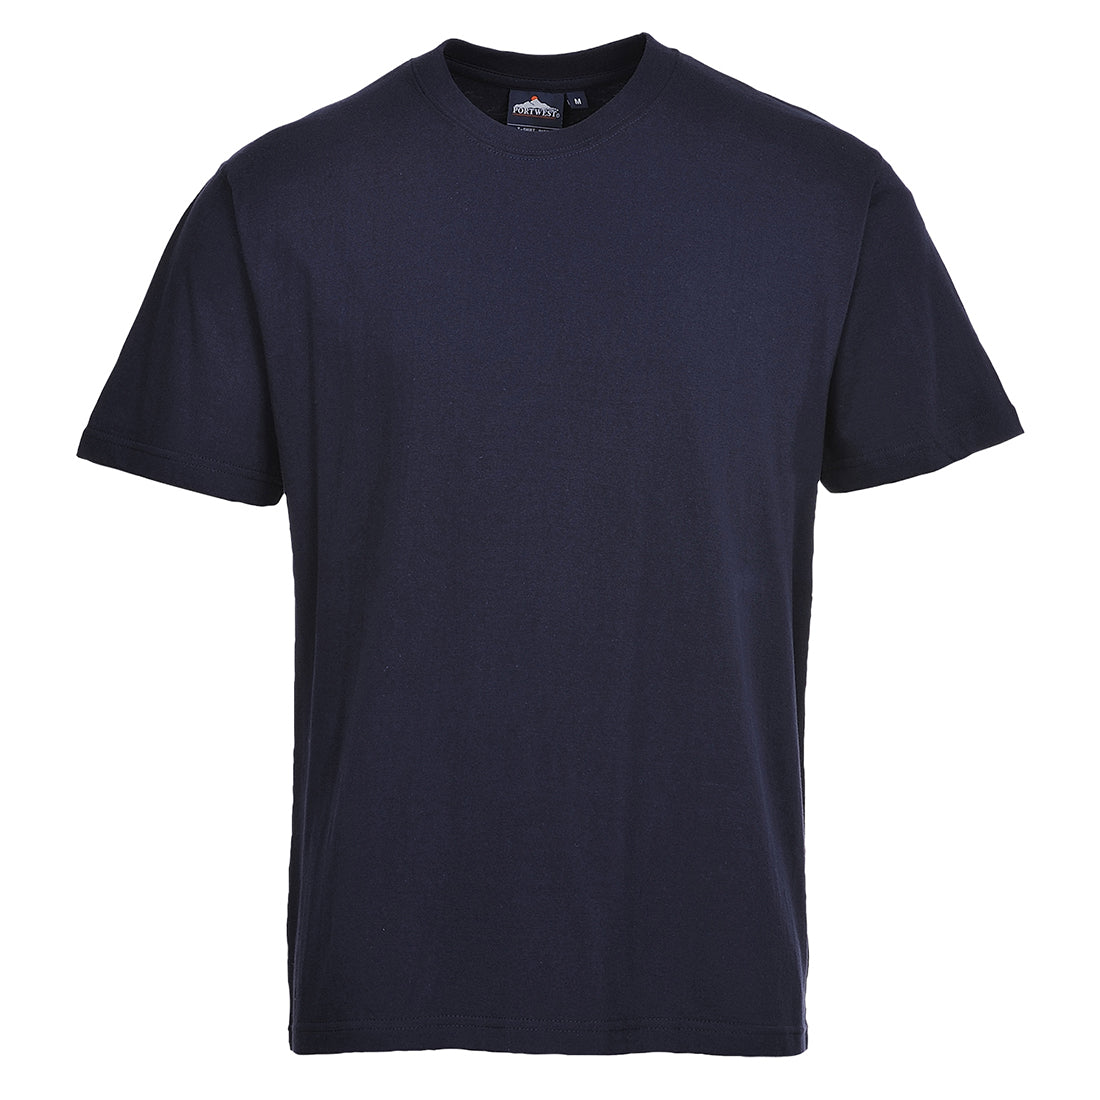 Turin Premium T-Shirt Navy - B195 Front